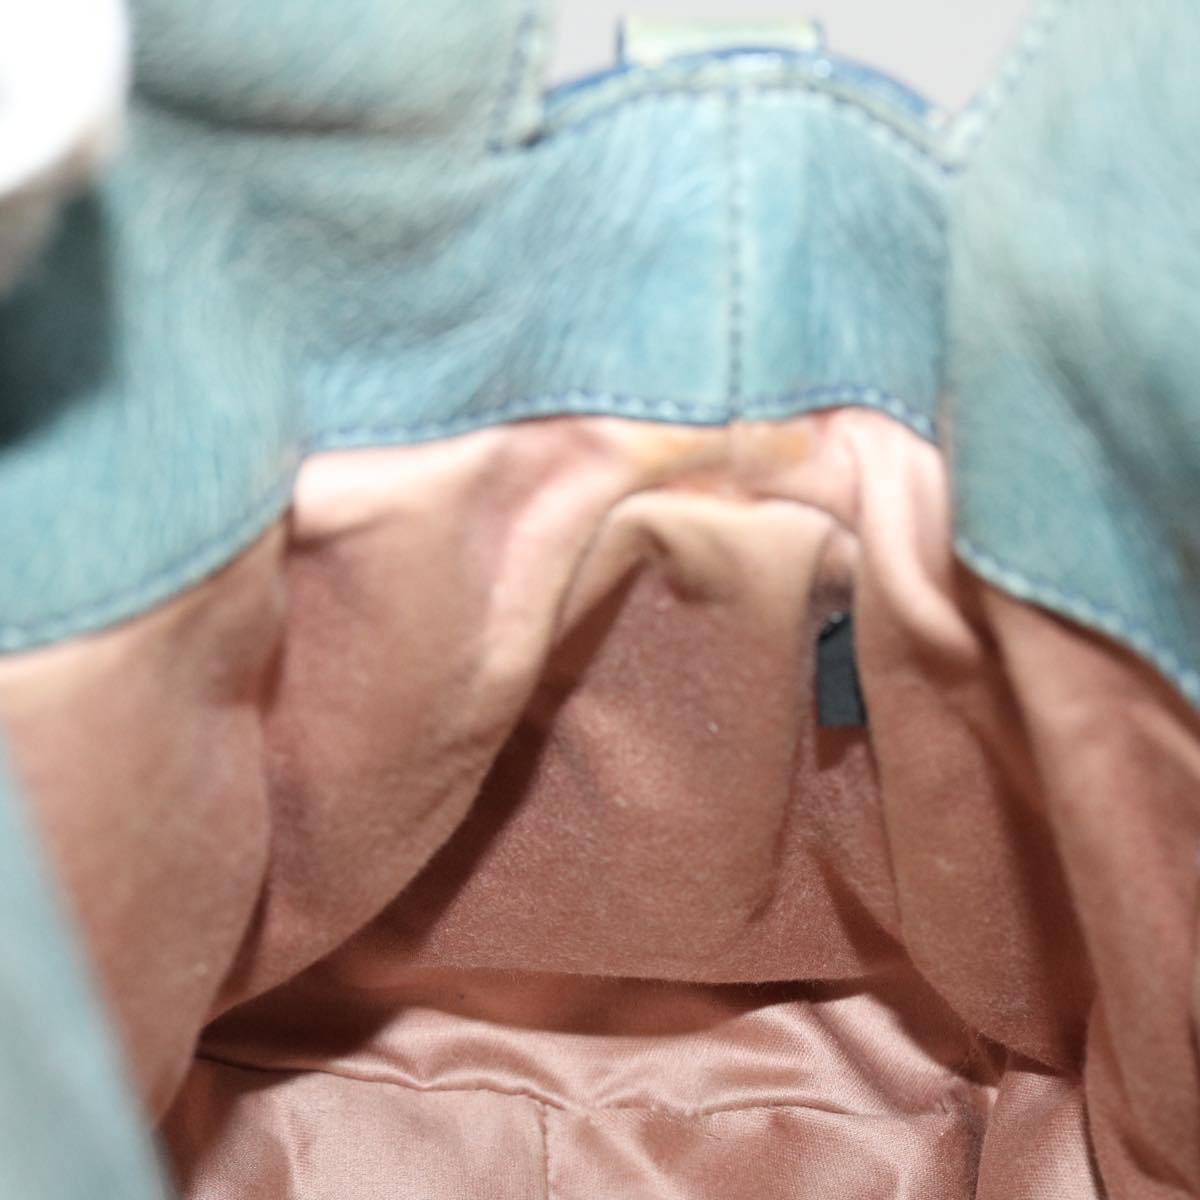 Miu Miu Shoulder Bag Leather 2way Blue Auth am3868